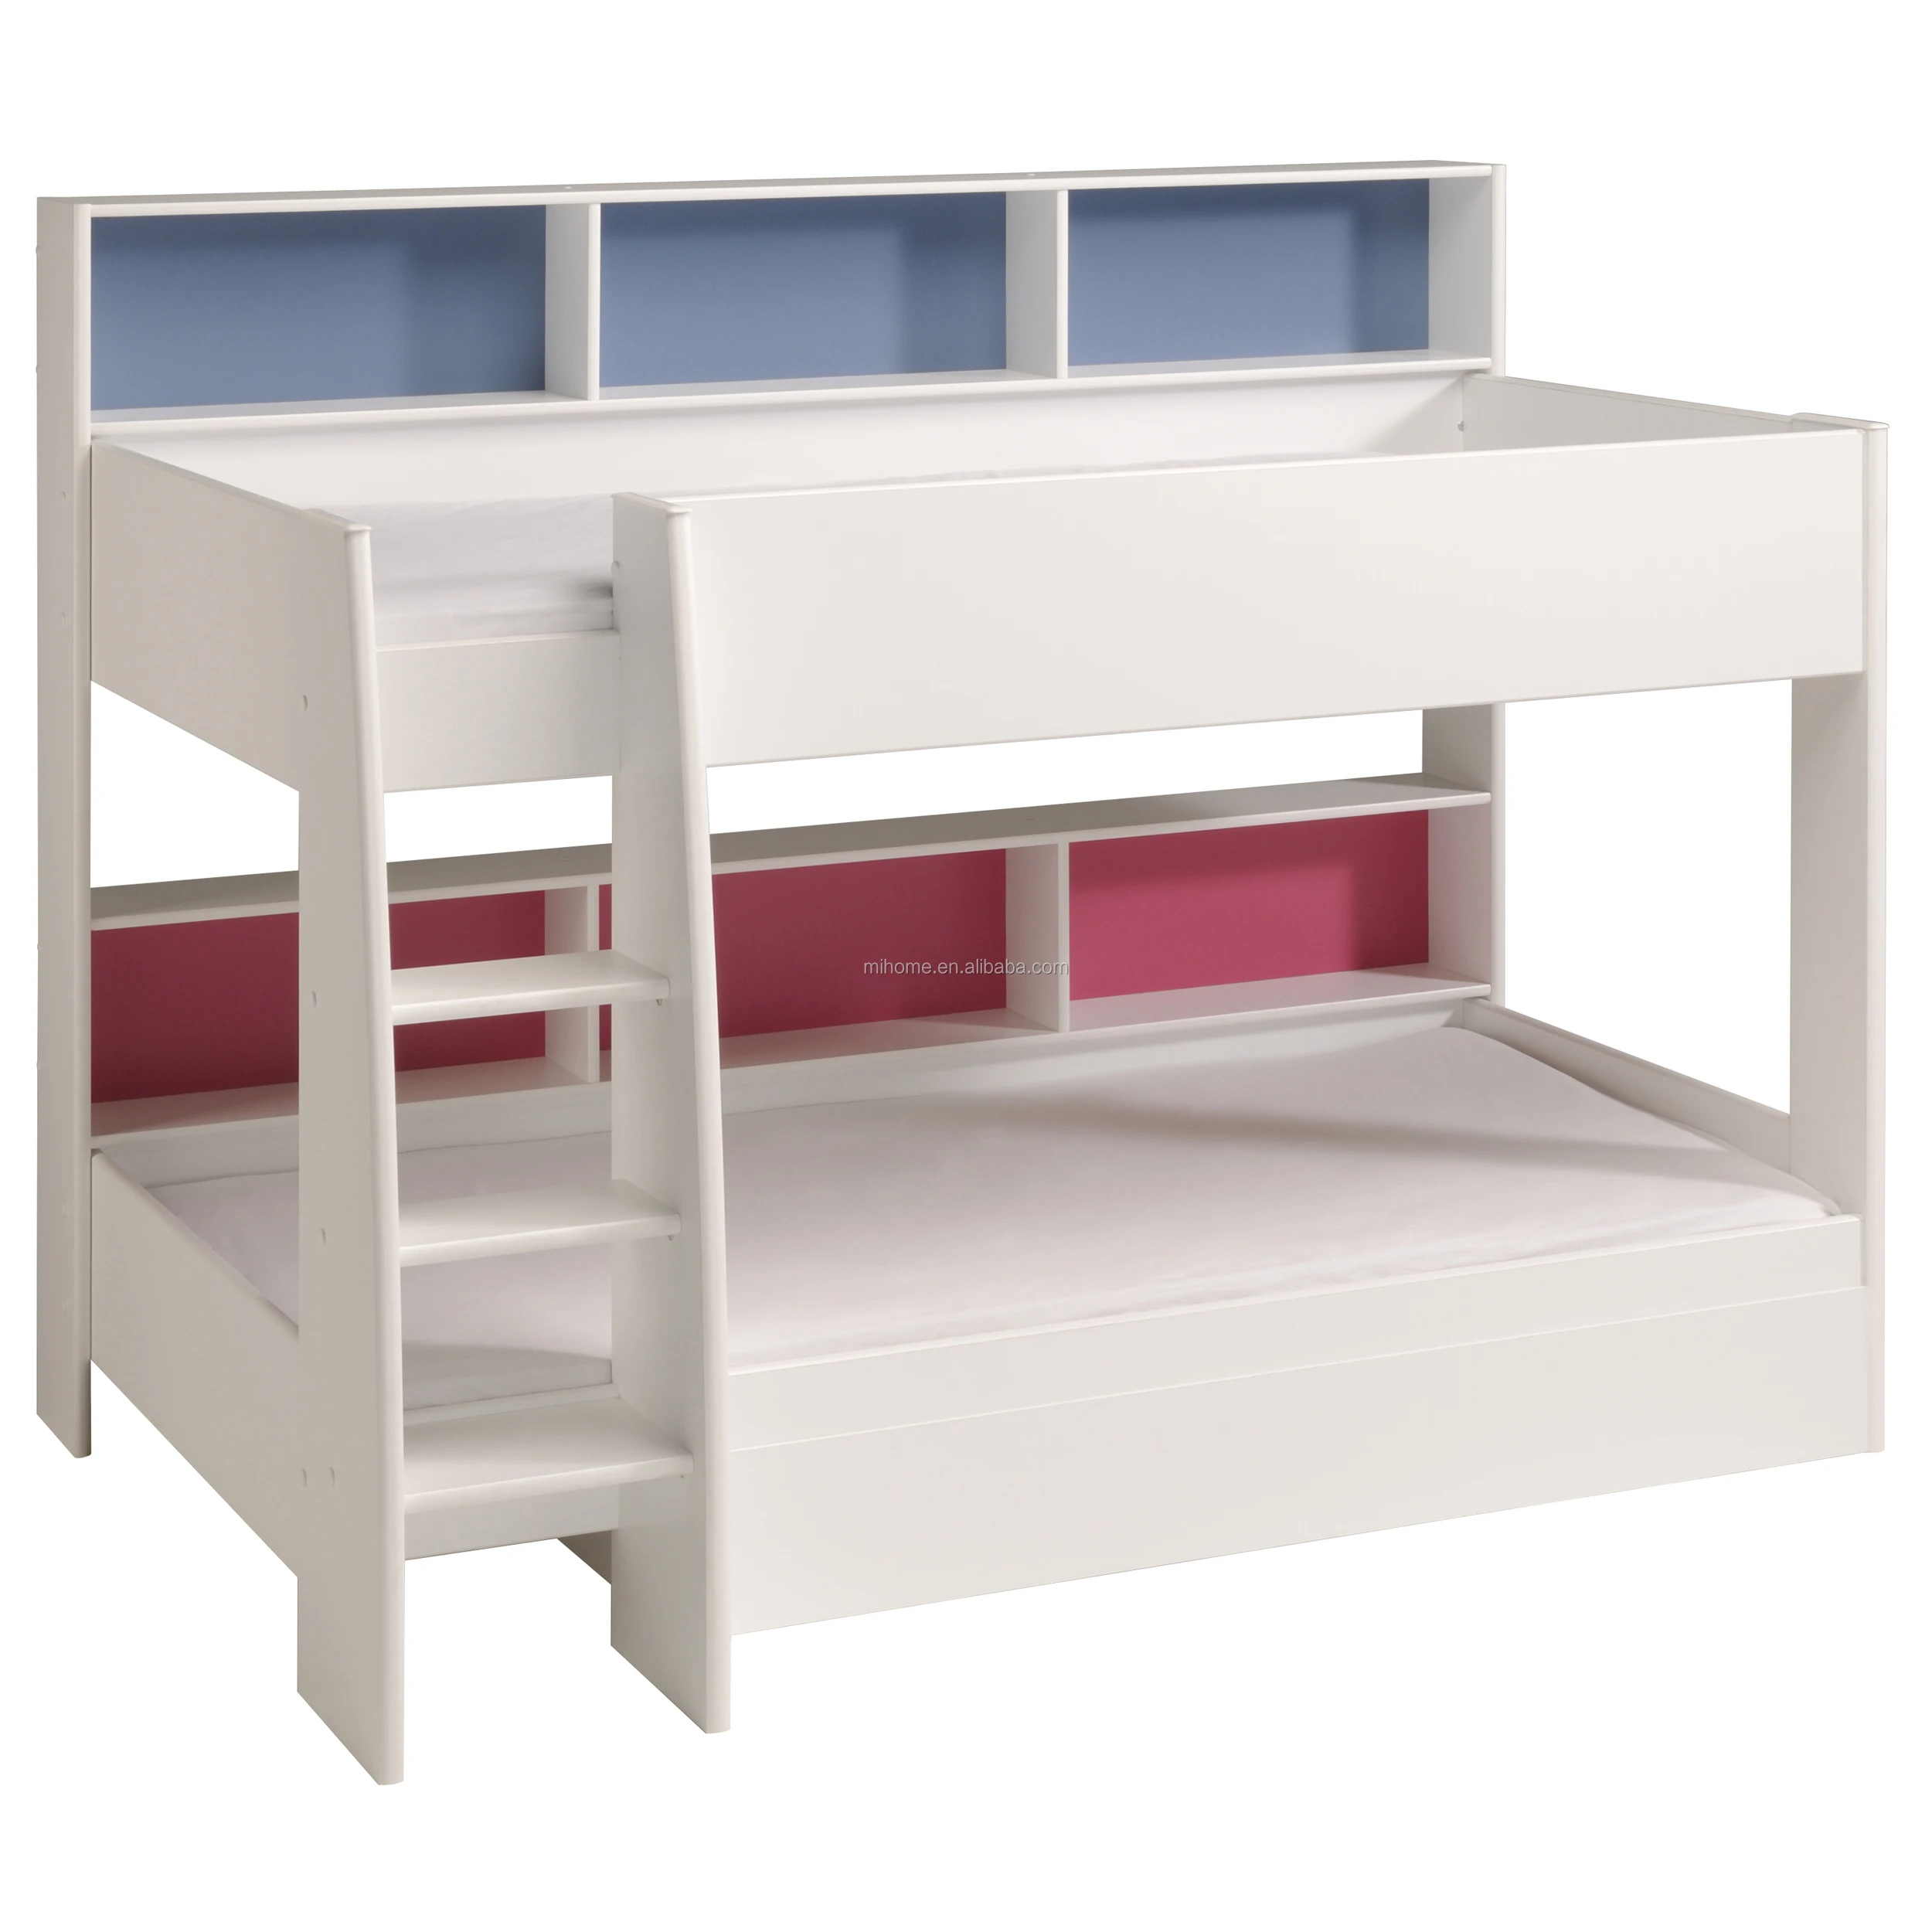 cheap cool bunk beds